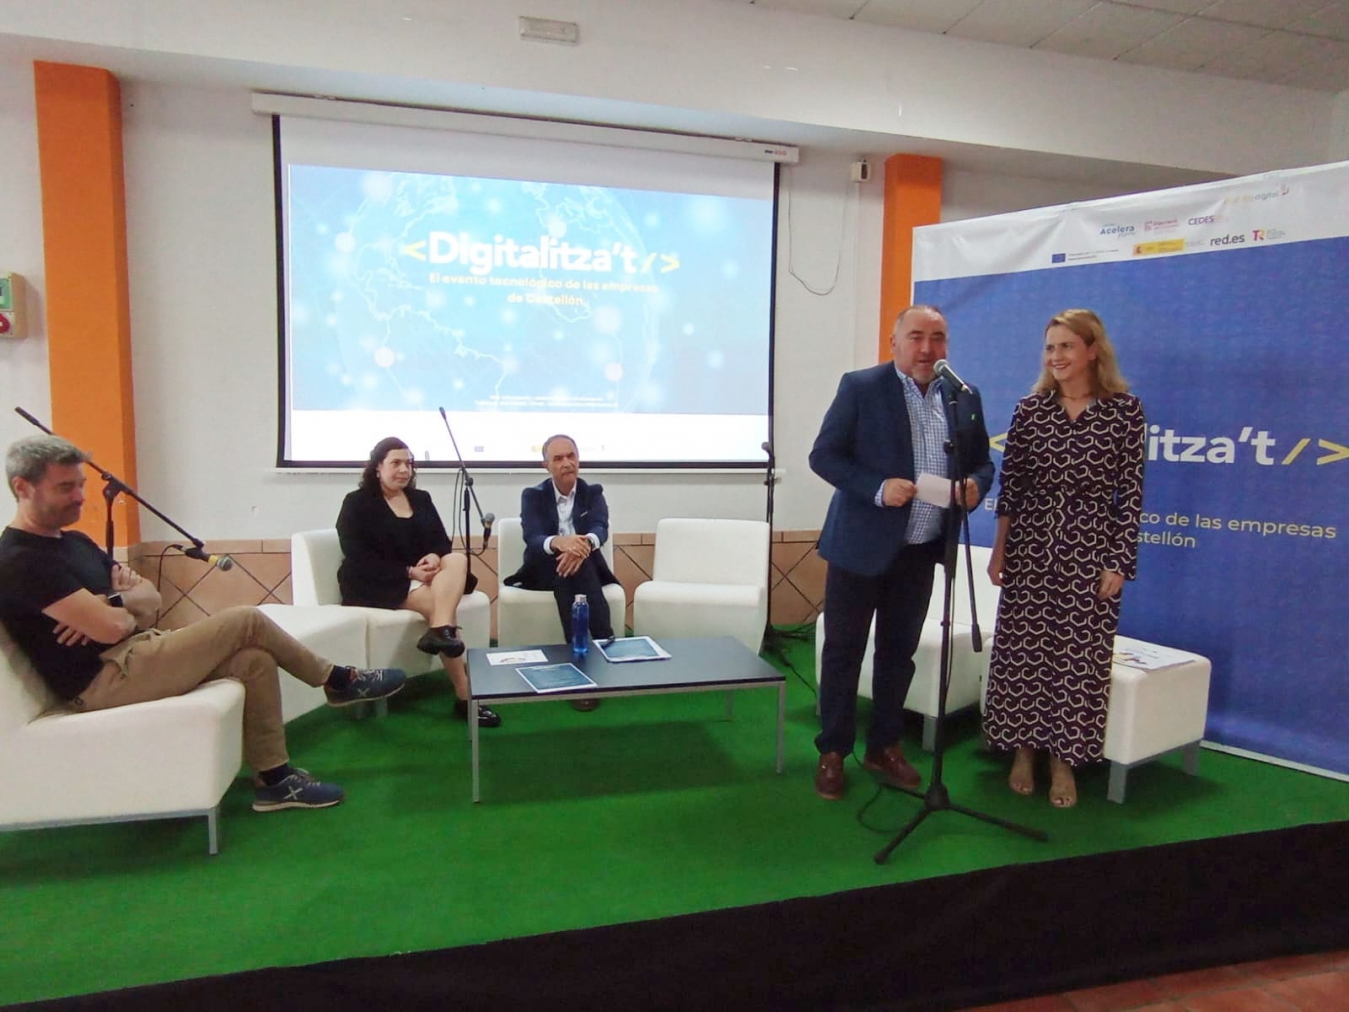 La Diputació de Castelló llança l'esdeveniment tecnològic 'Digitalitza’t', amb l'objectiu de difondre ajudes i eines per a la digitalització de pimes